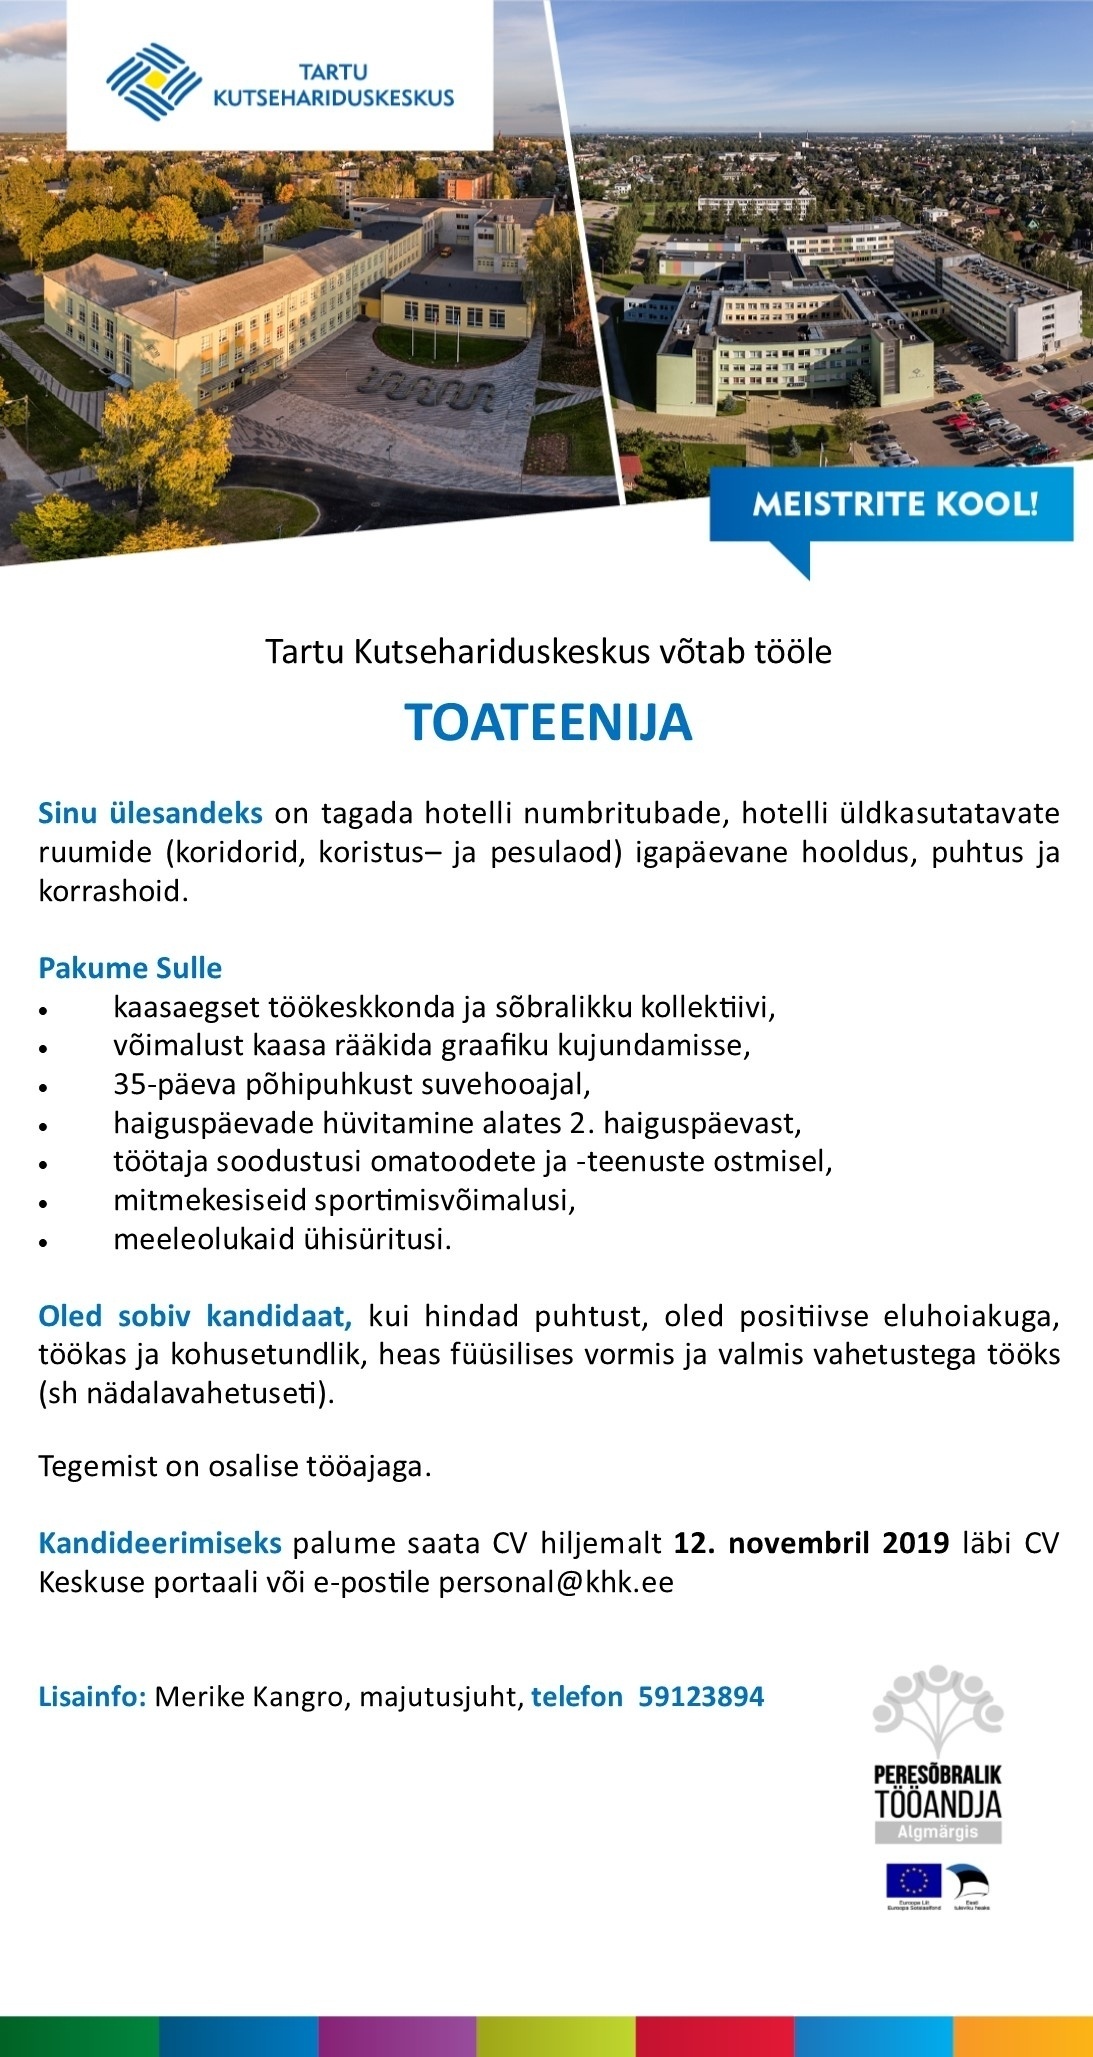 Tartu Kutsehariduskeskus Toateenija